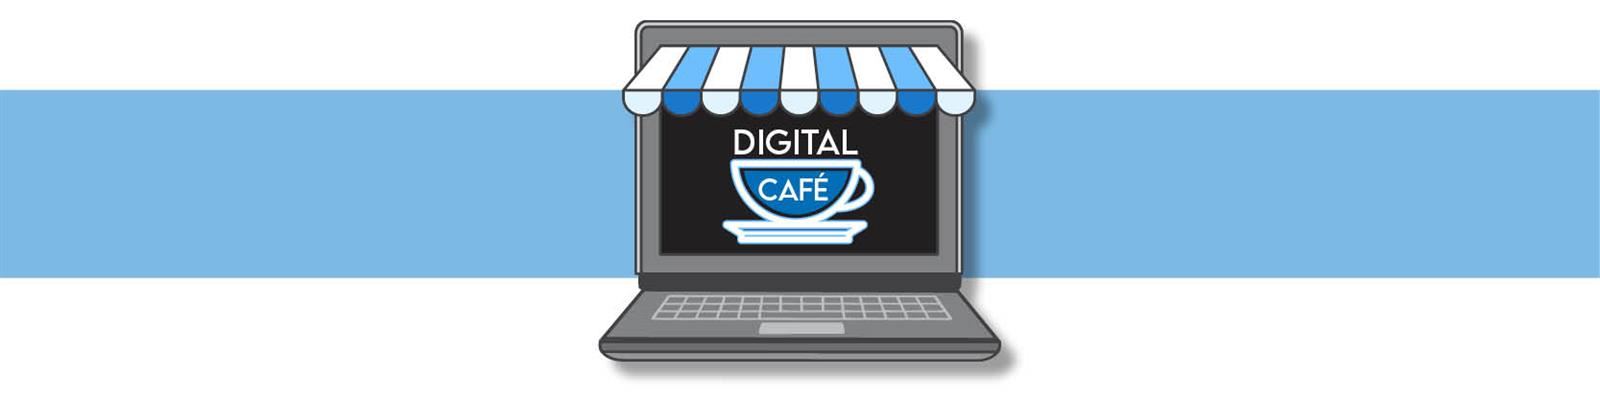 Digital Cafe 